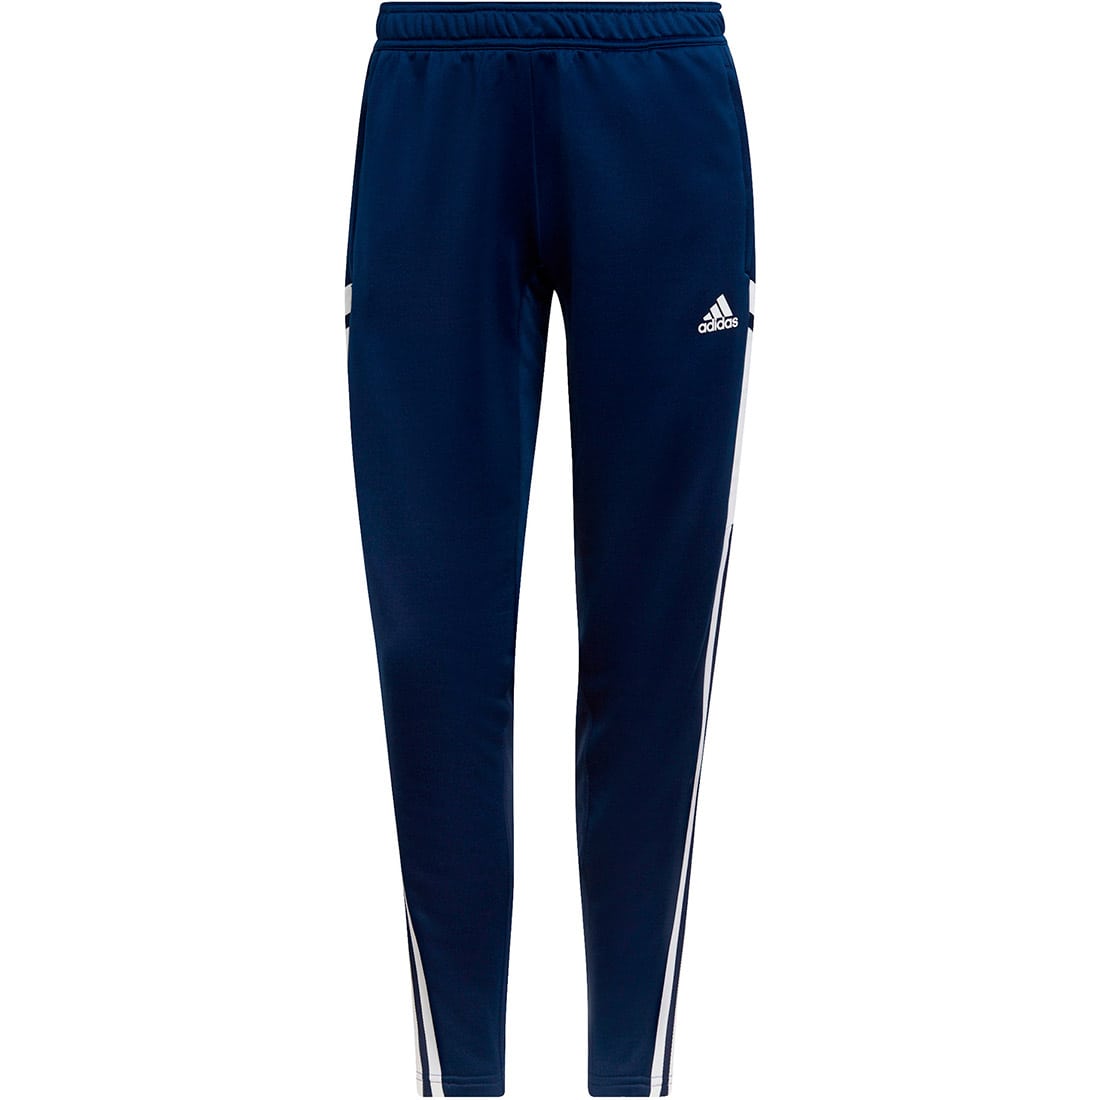 Adidas Damen Trainingshose Condivo 22 blau-weiß